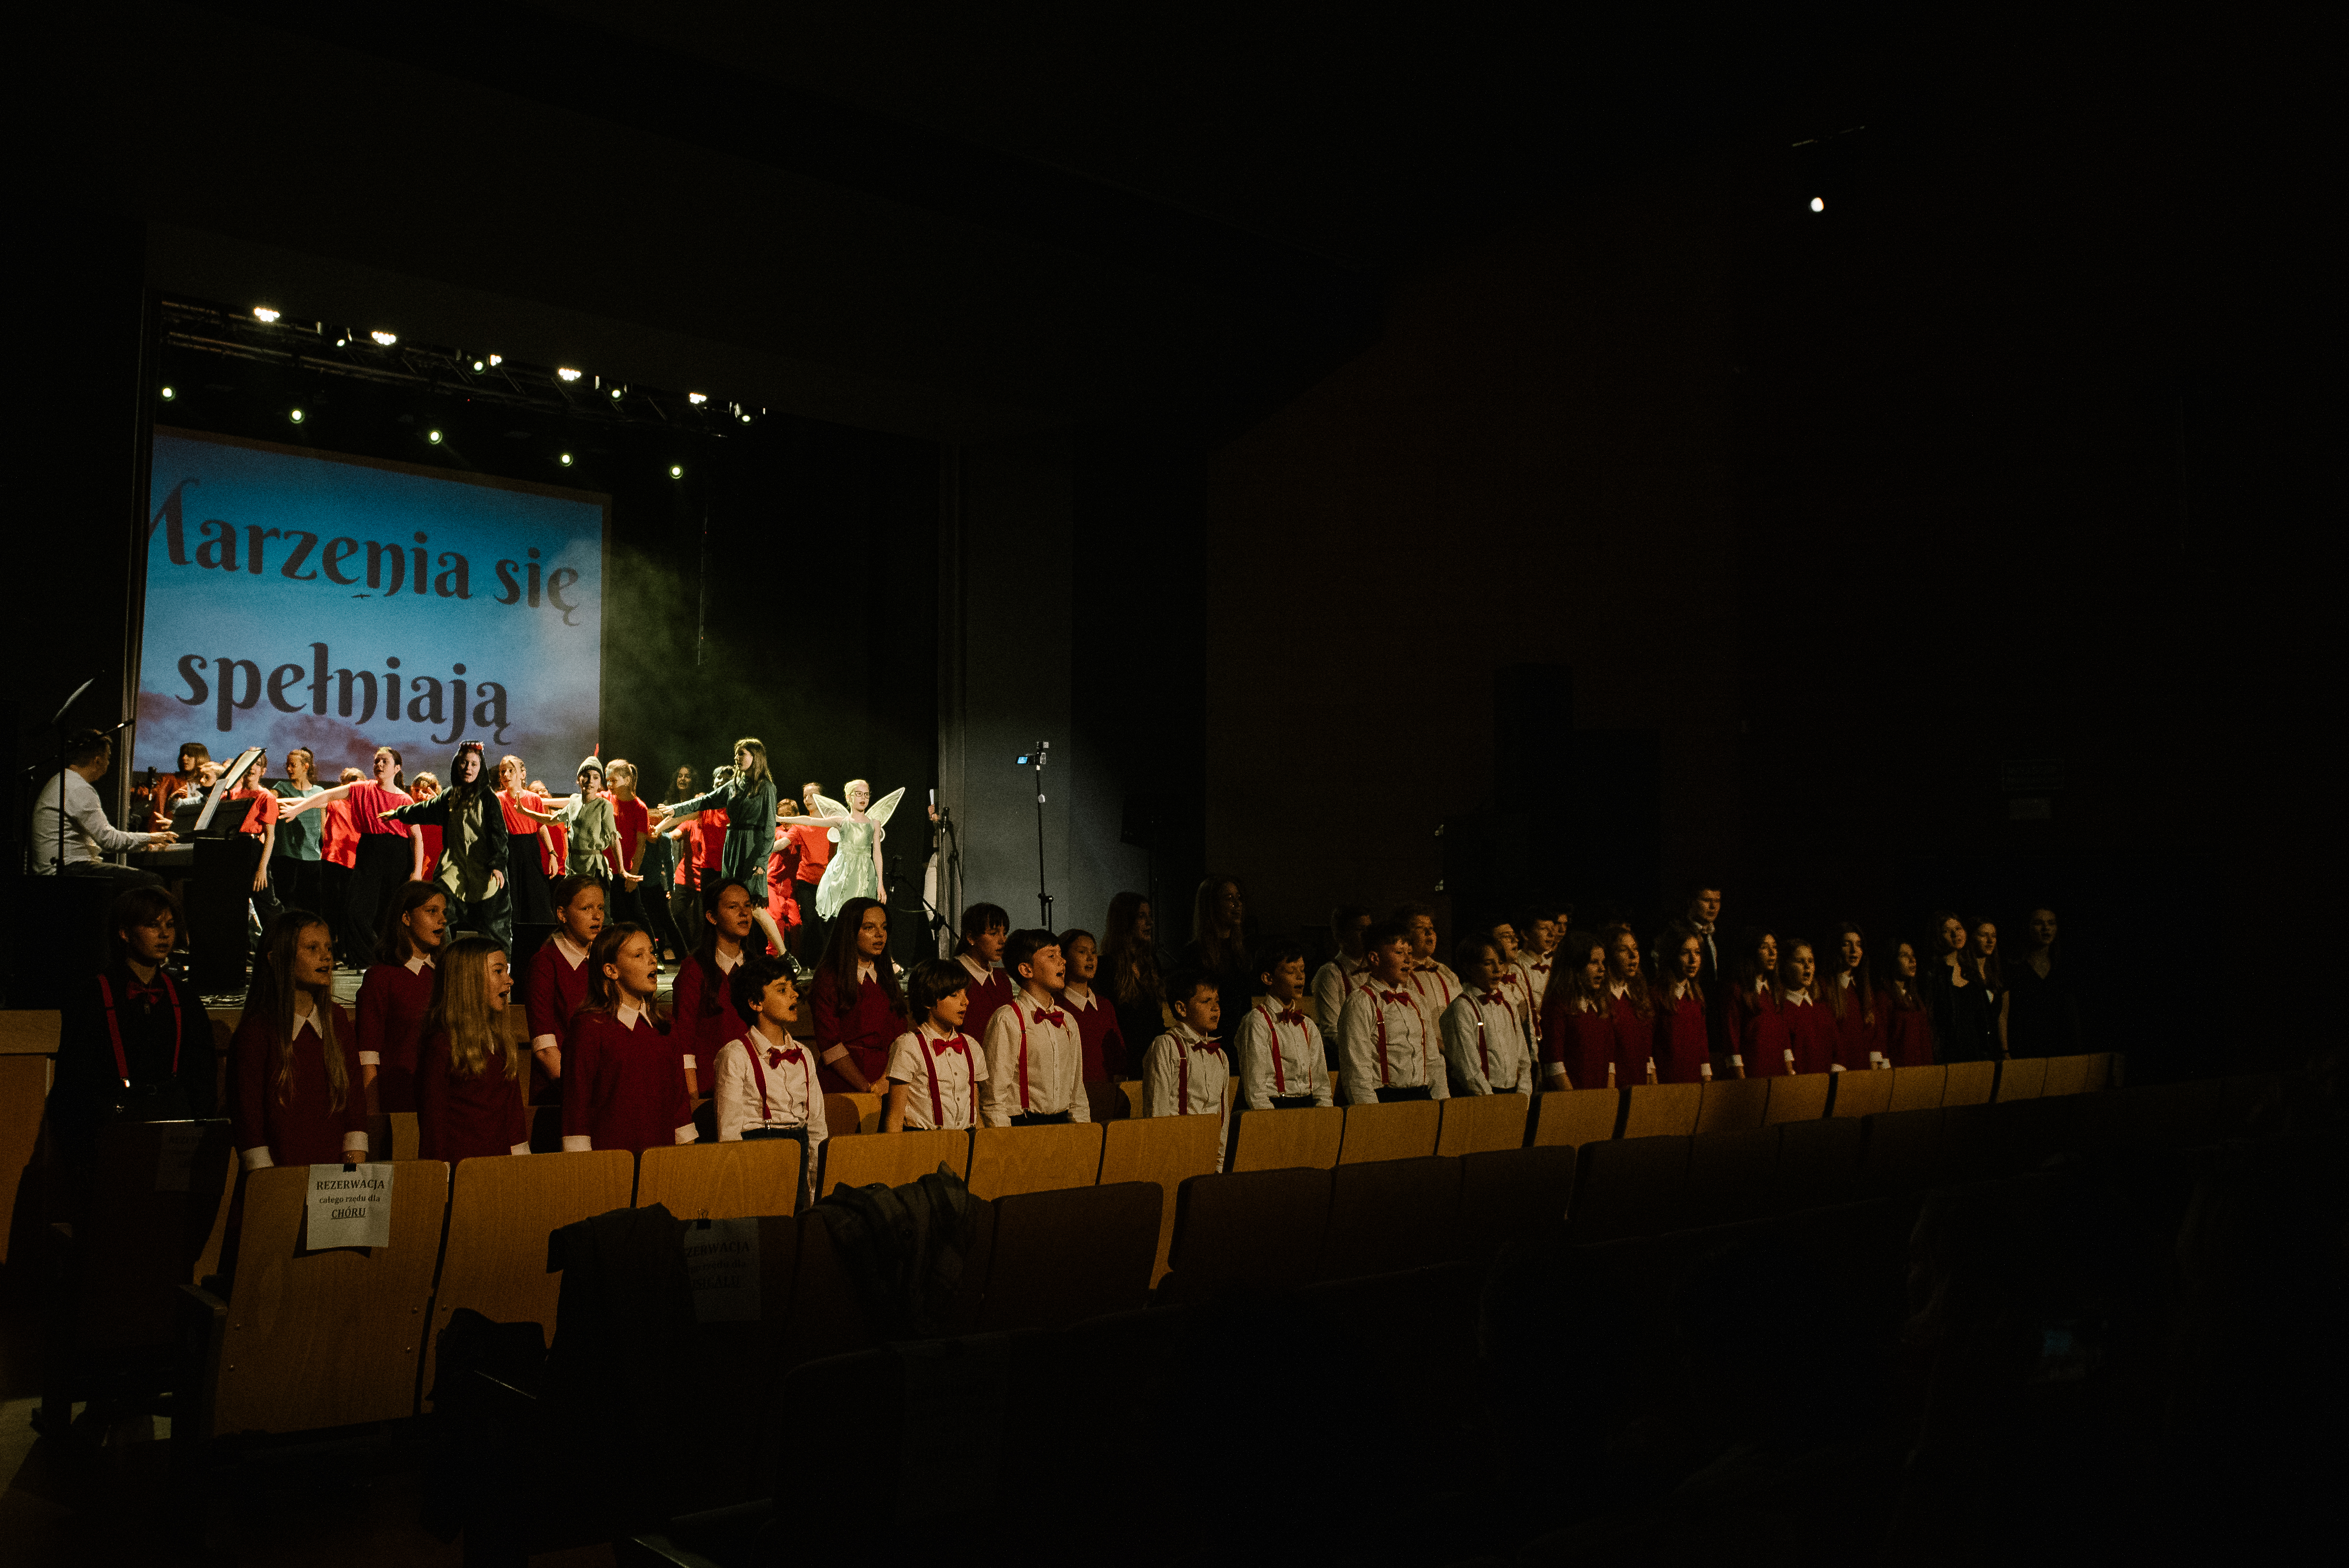 Na zdjęciu widoczna jest scena Strzelińskiego Ośrodka Kultury. W dwóch pierwszych rzędach widowni stoją dzieci należące do chóru szkolnego, natomiast na scenie znajdują się tańczący uczniowie w różnokolorowych strojach.